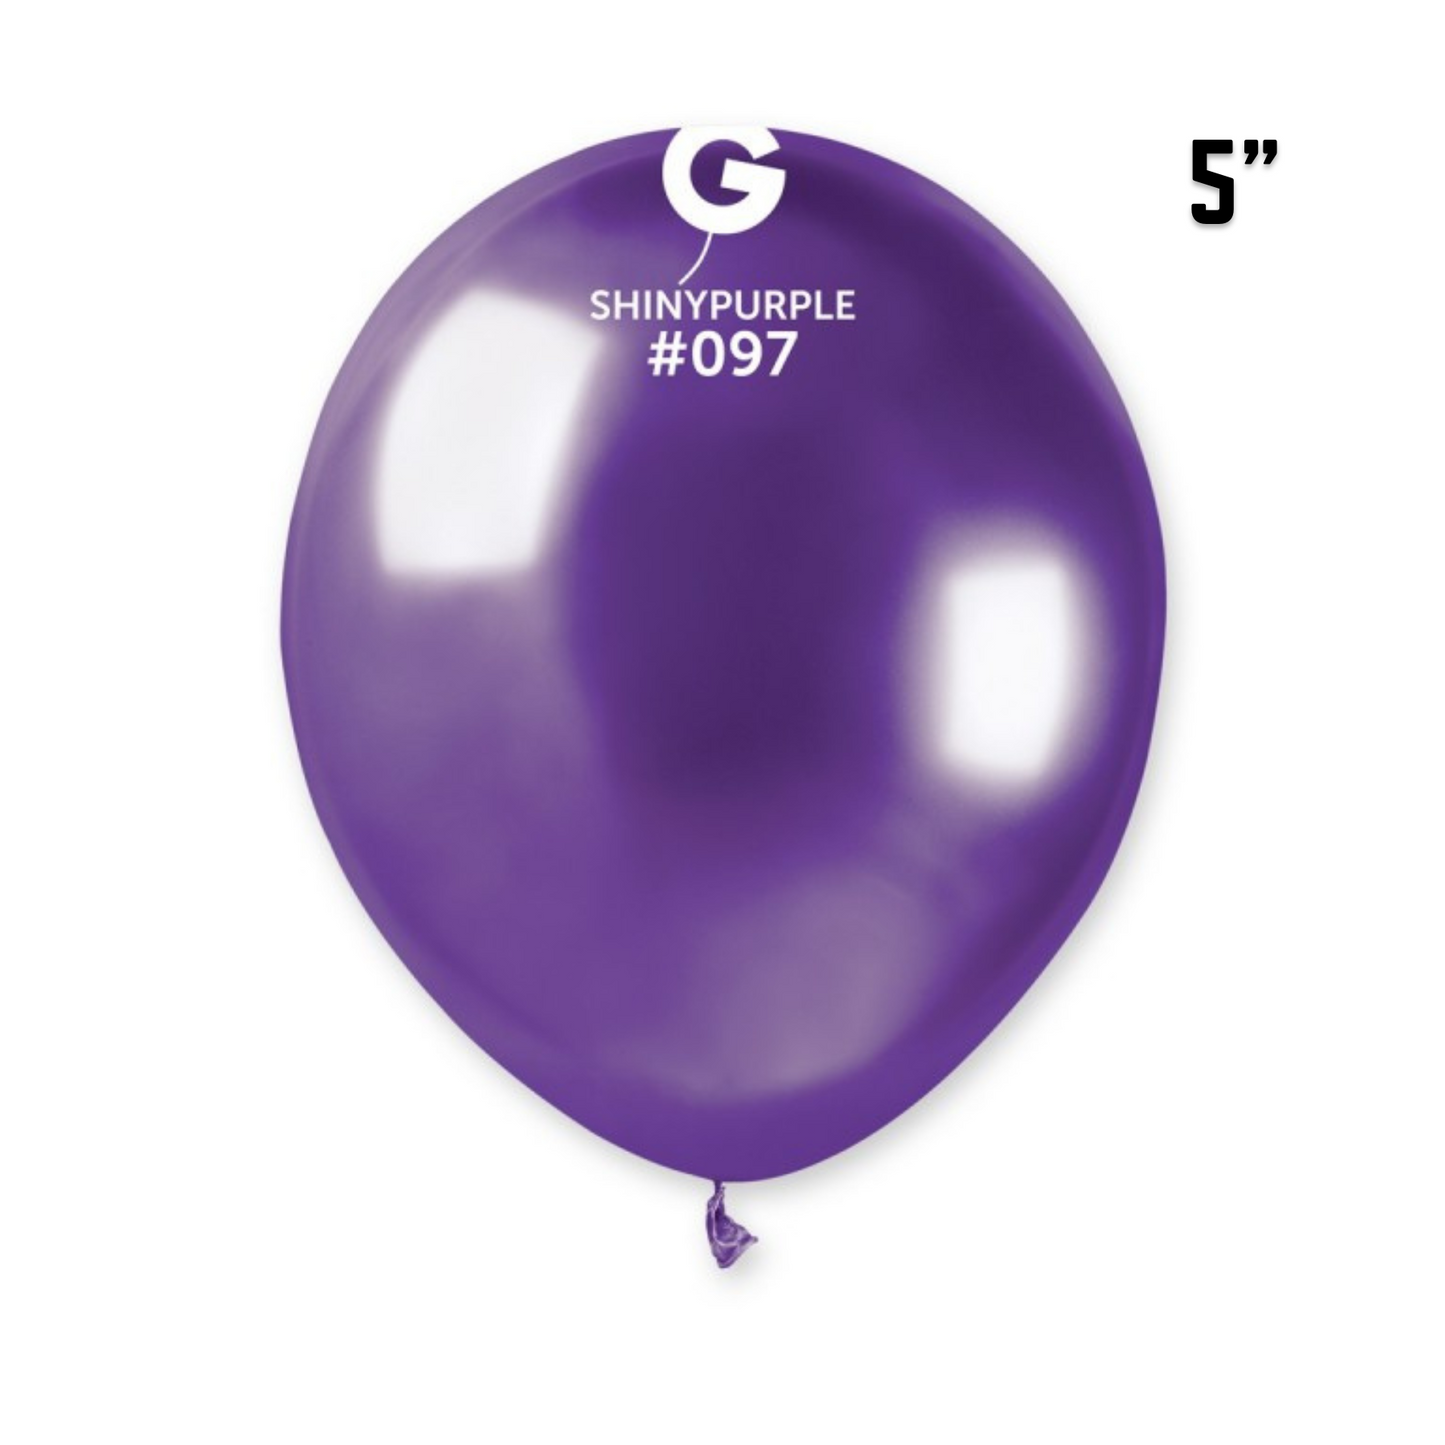 Shiny Purple Balloons